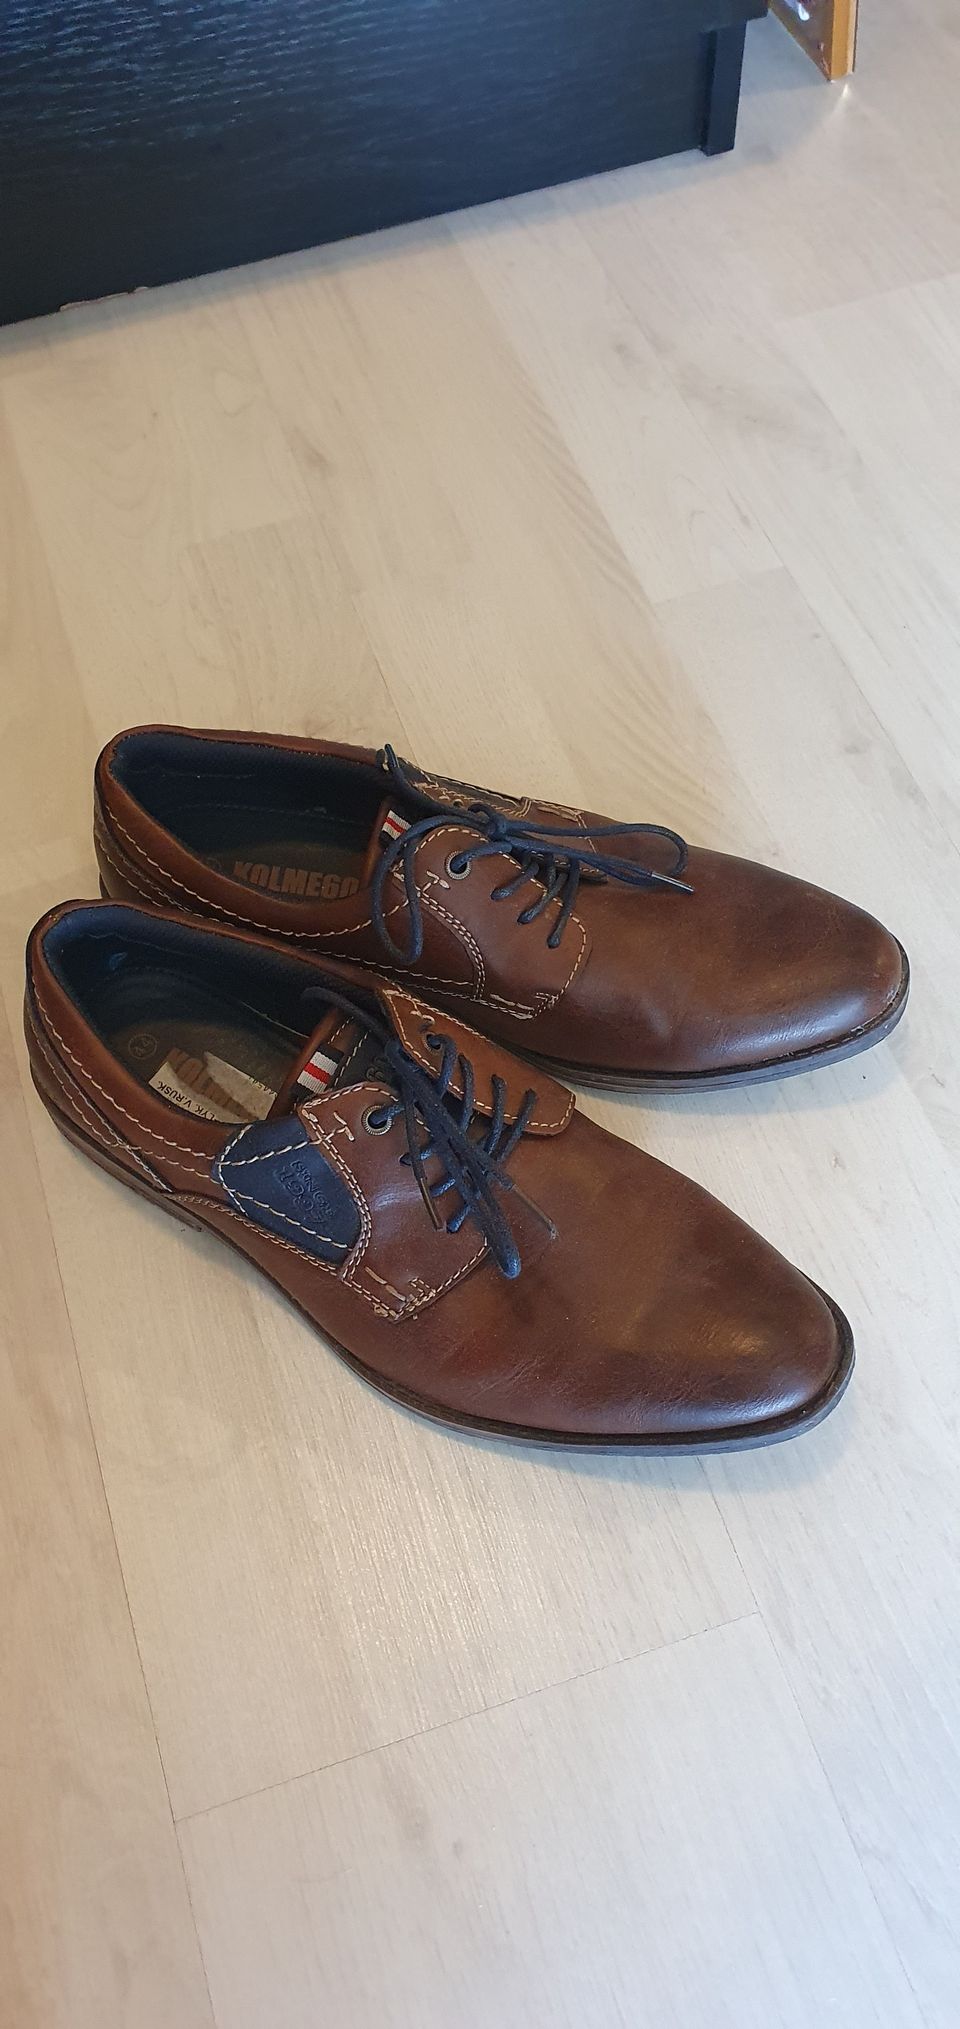 Miesten siistit ruskeat kengät (44)